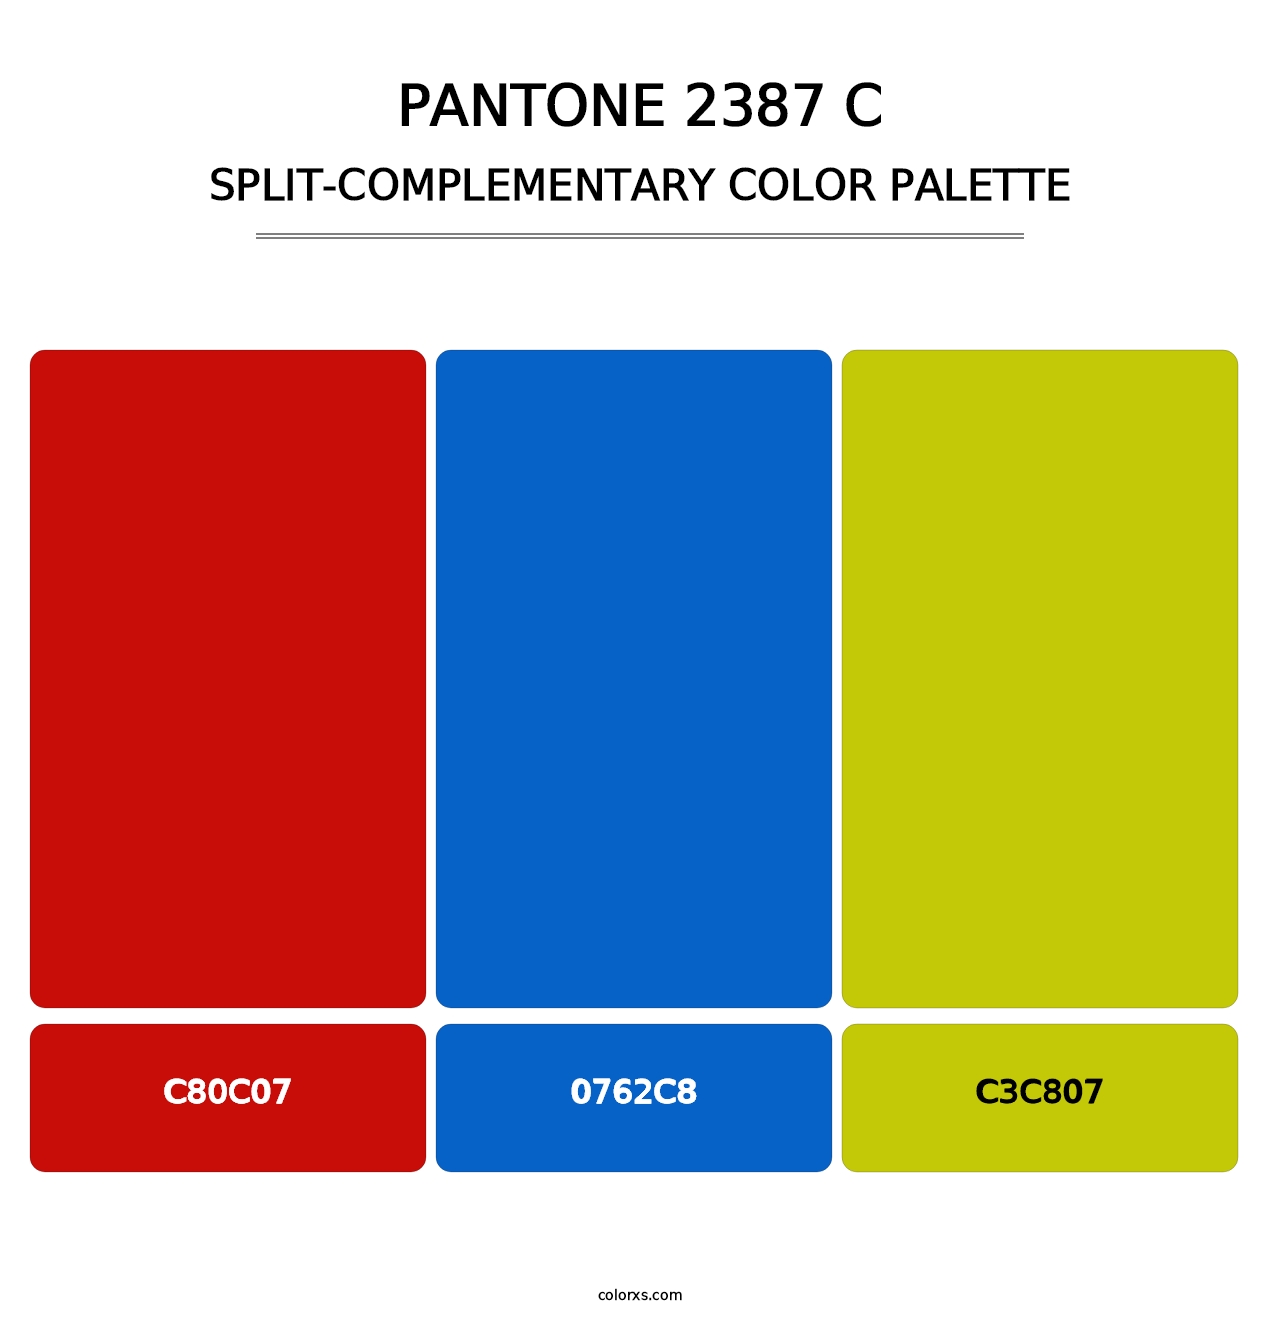 PANTONE 2387 C - Split-Complementary Color Palette